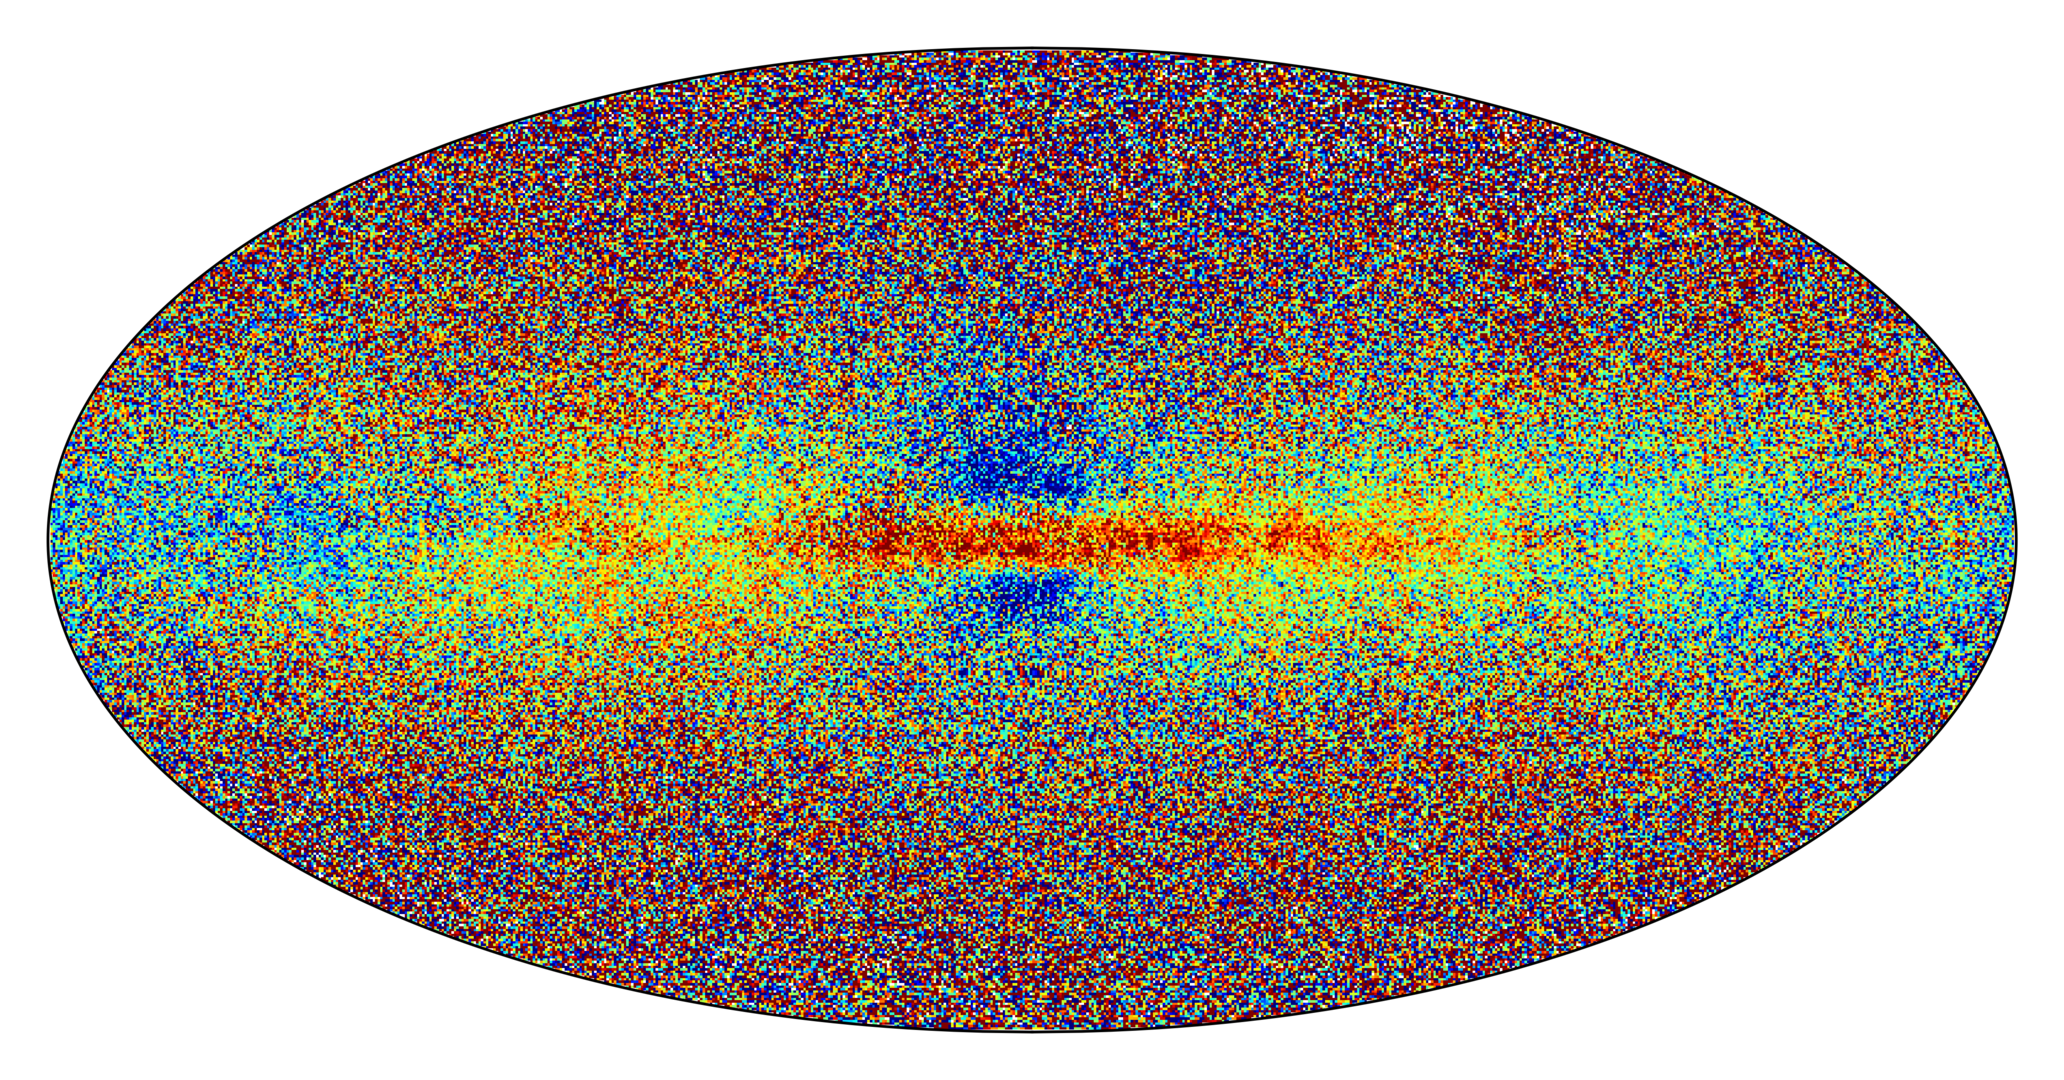 Химическая карта галактики Млечный Путь и ее звезд. © ESA/Gaia/DPAC; CC BY-SA 3.0 IGO, CC BY-SA 3.0 IGO.